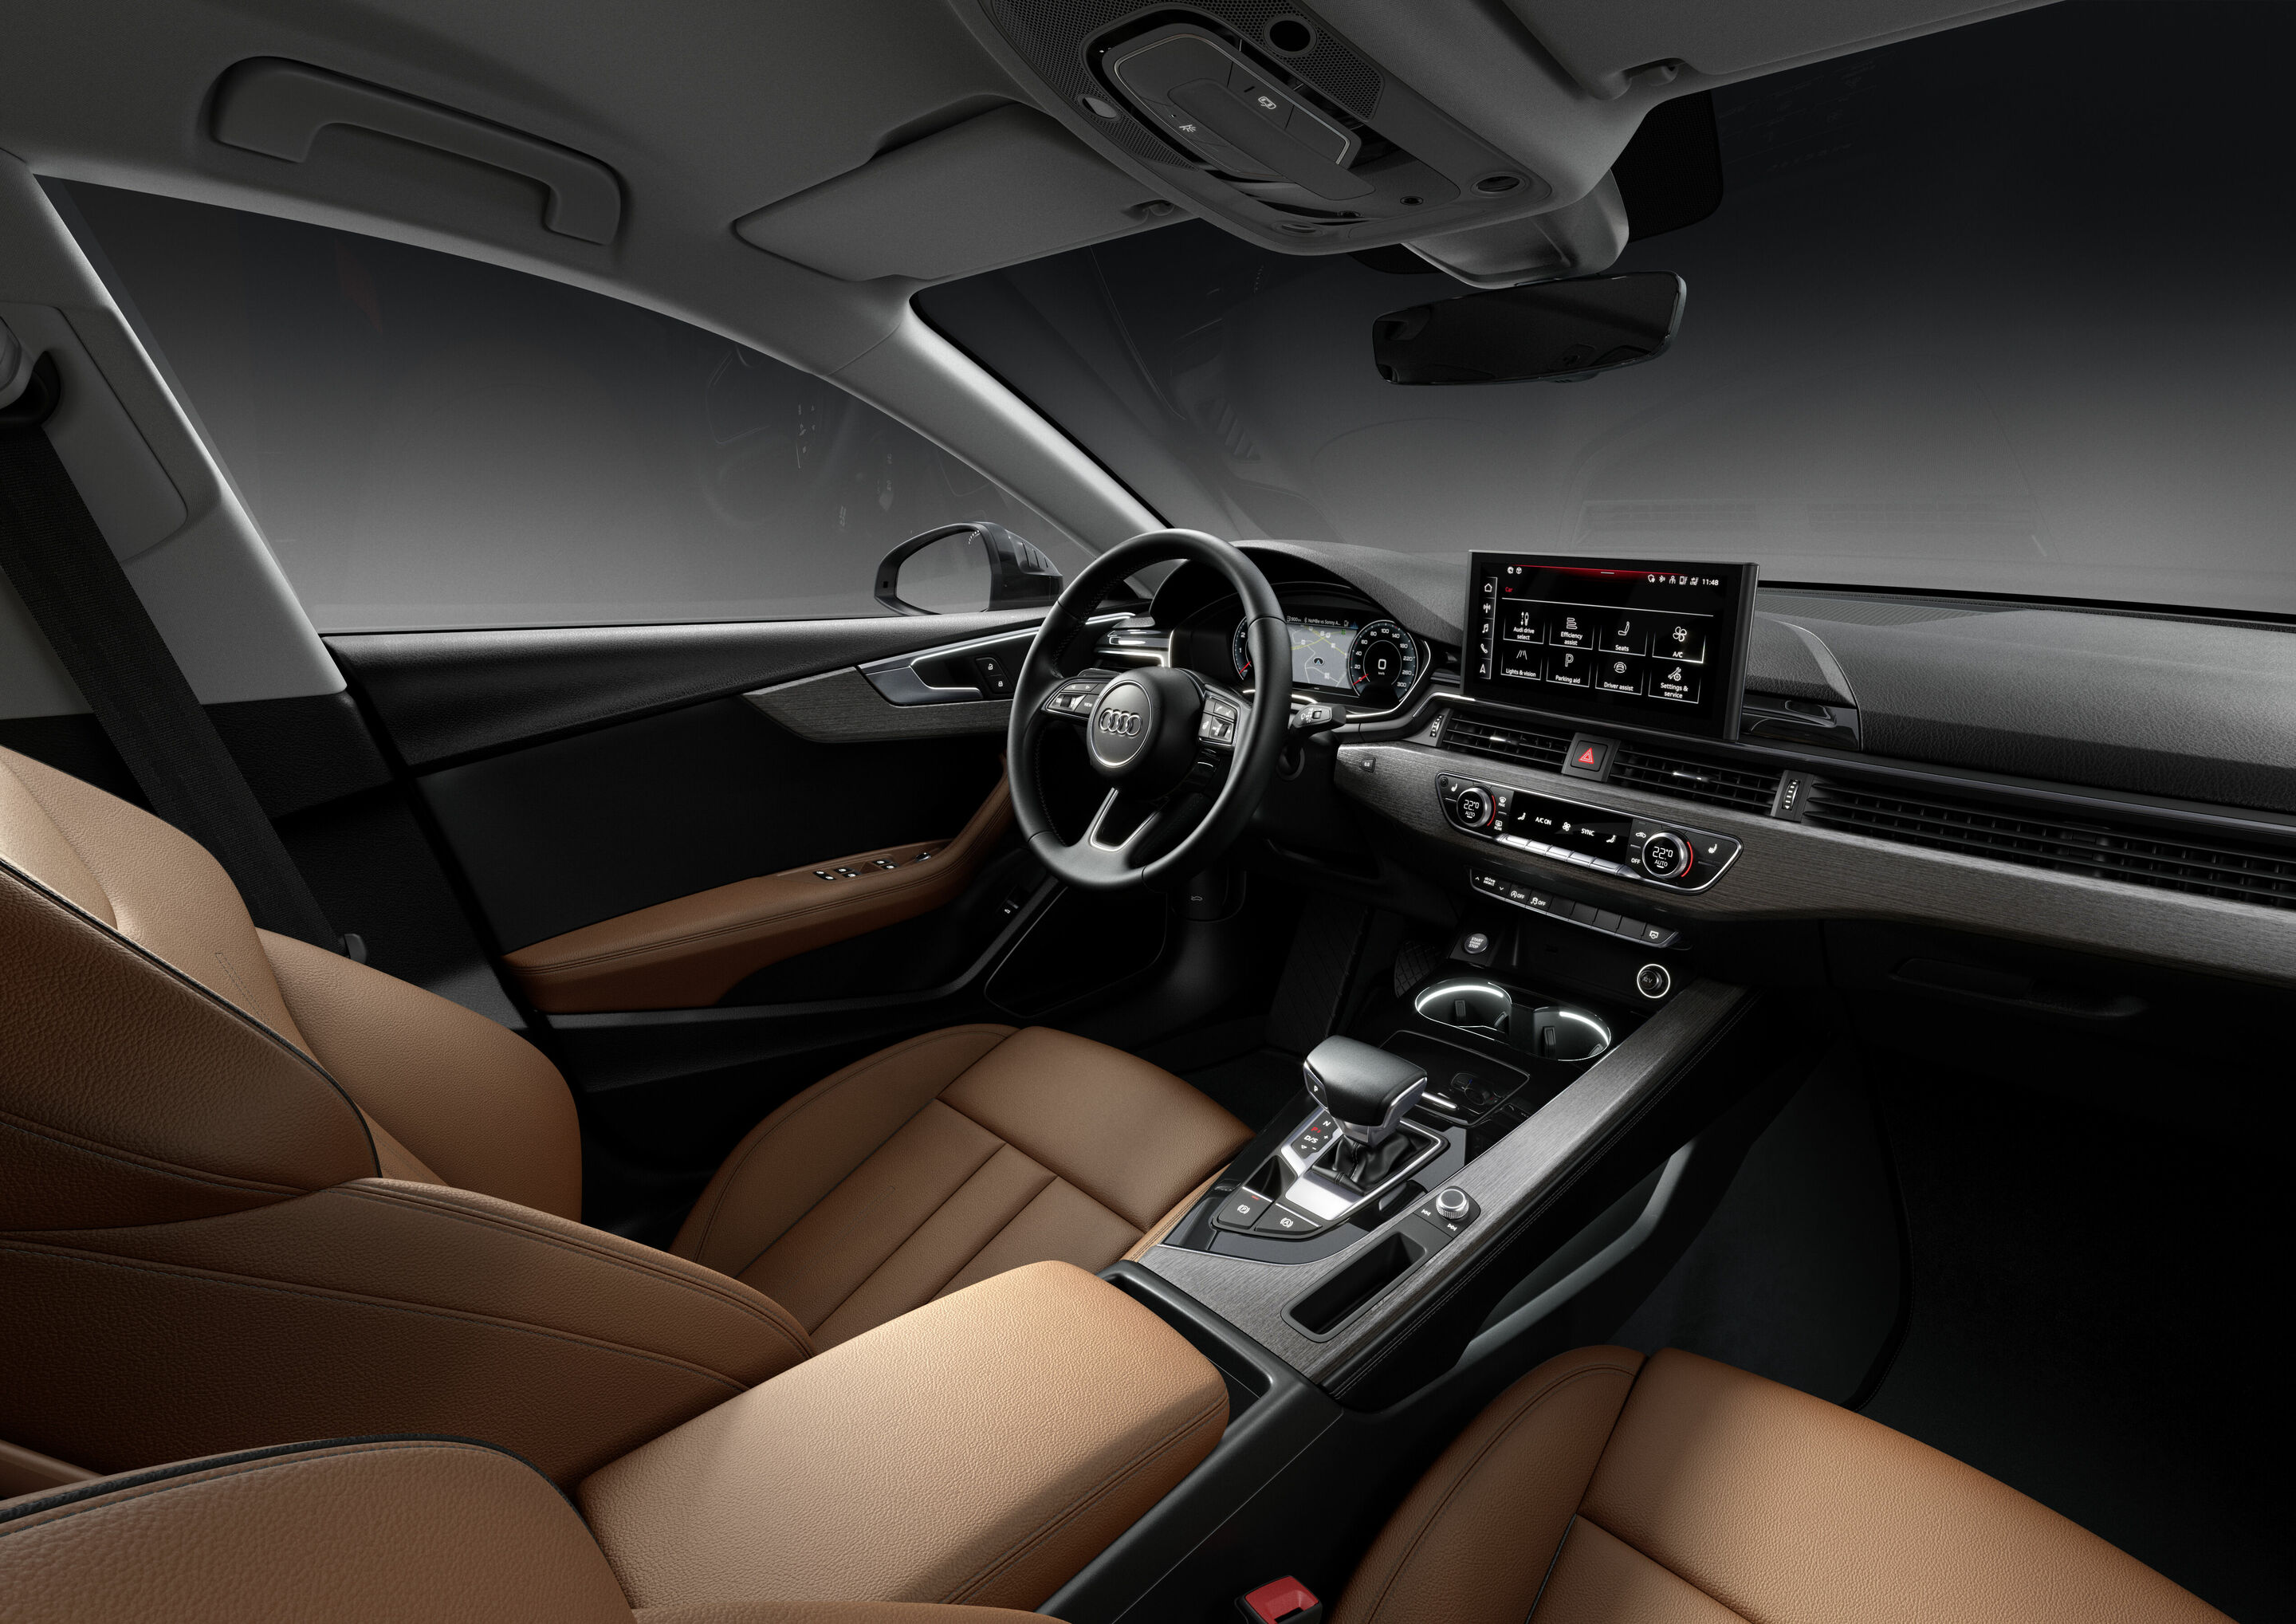 2023 Audi A4 vs. A5  Specs, Interior, Performance